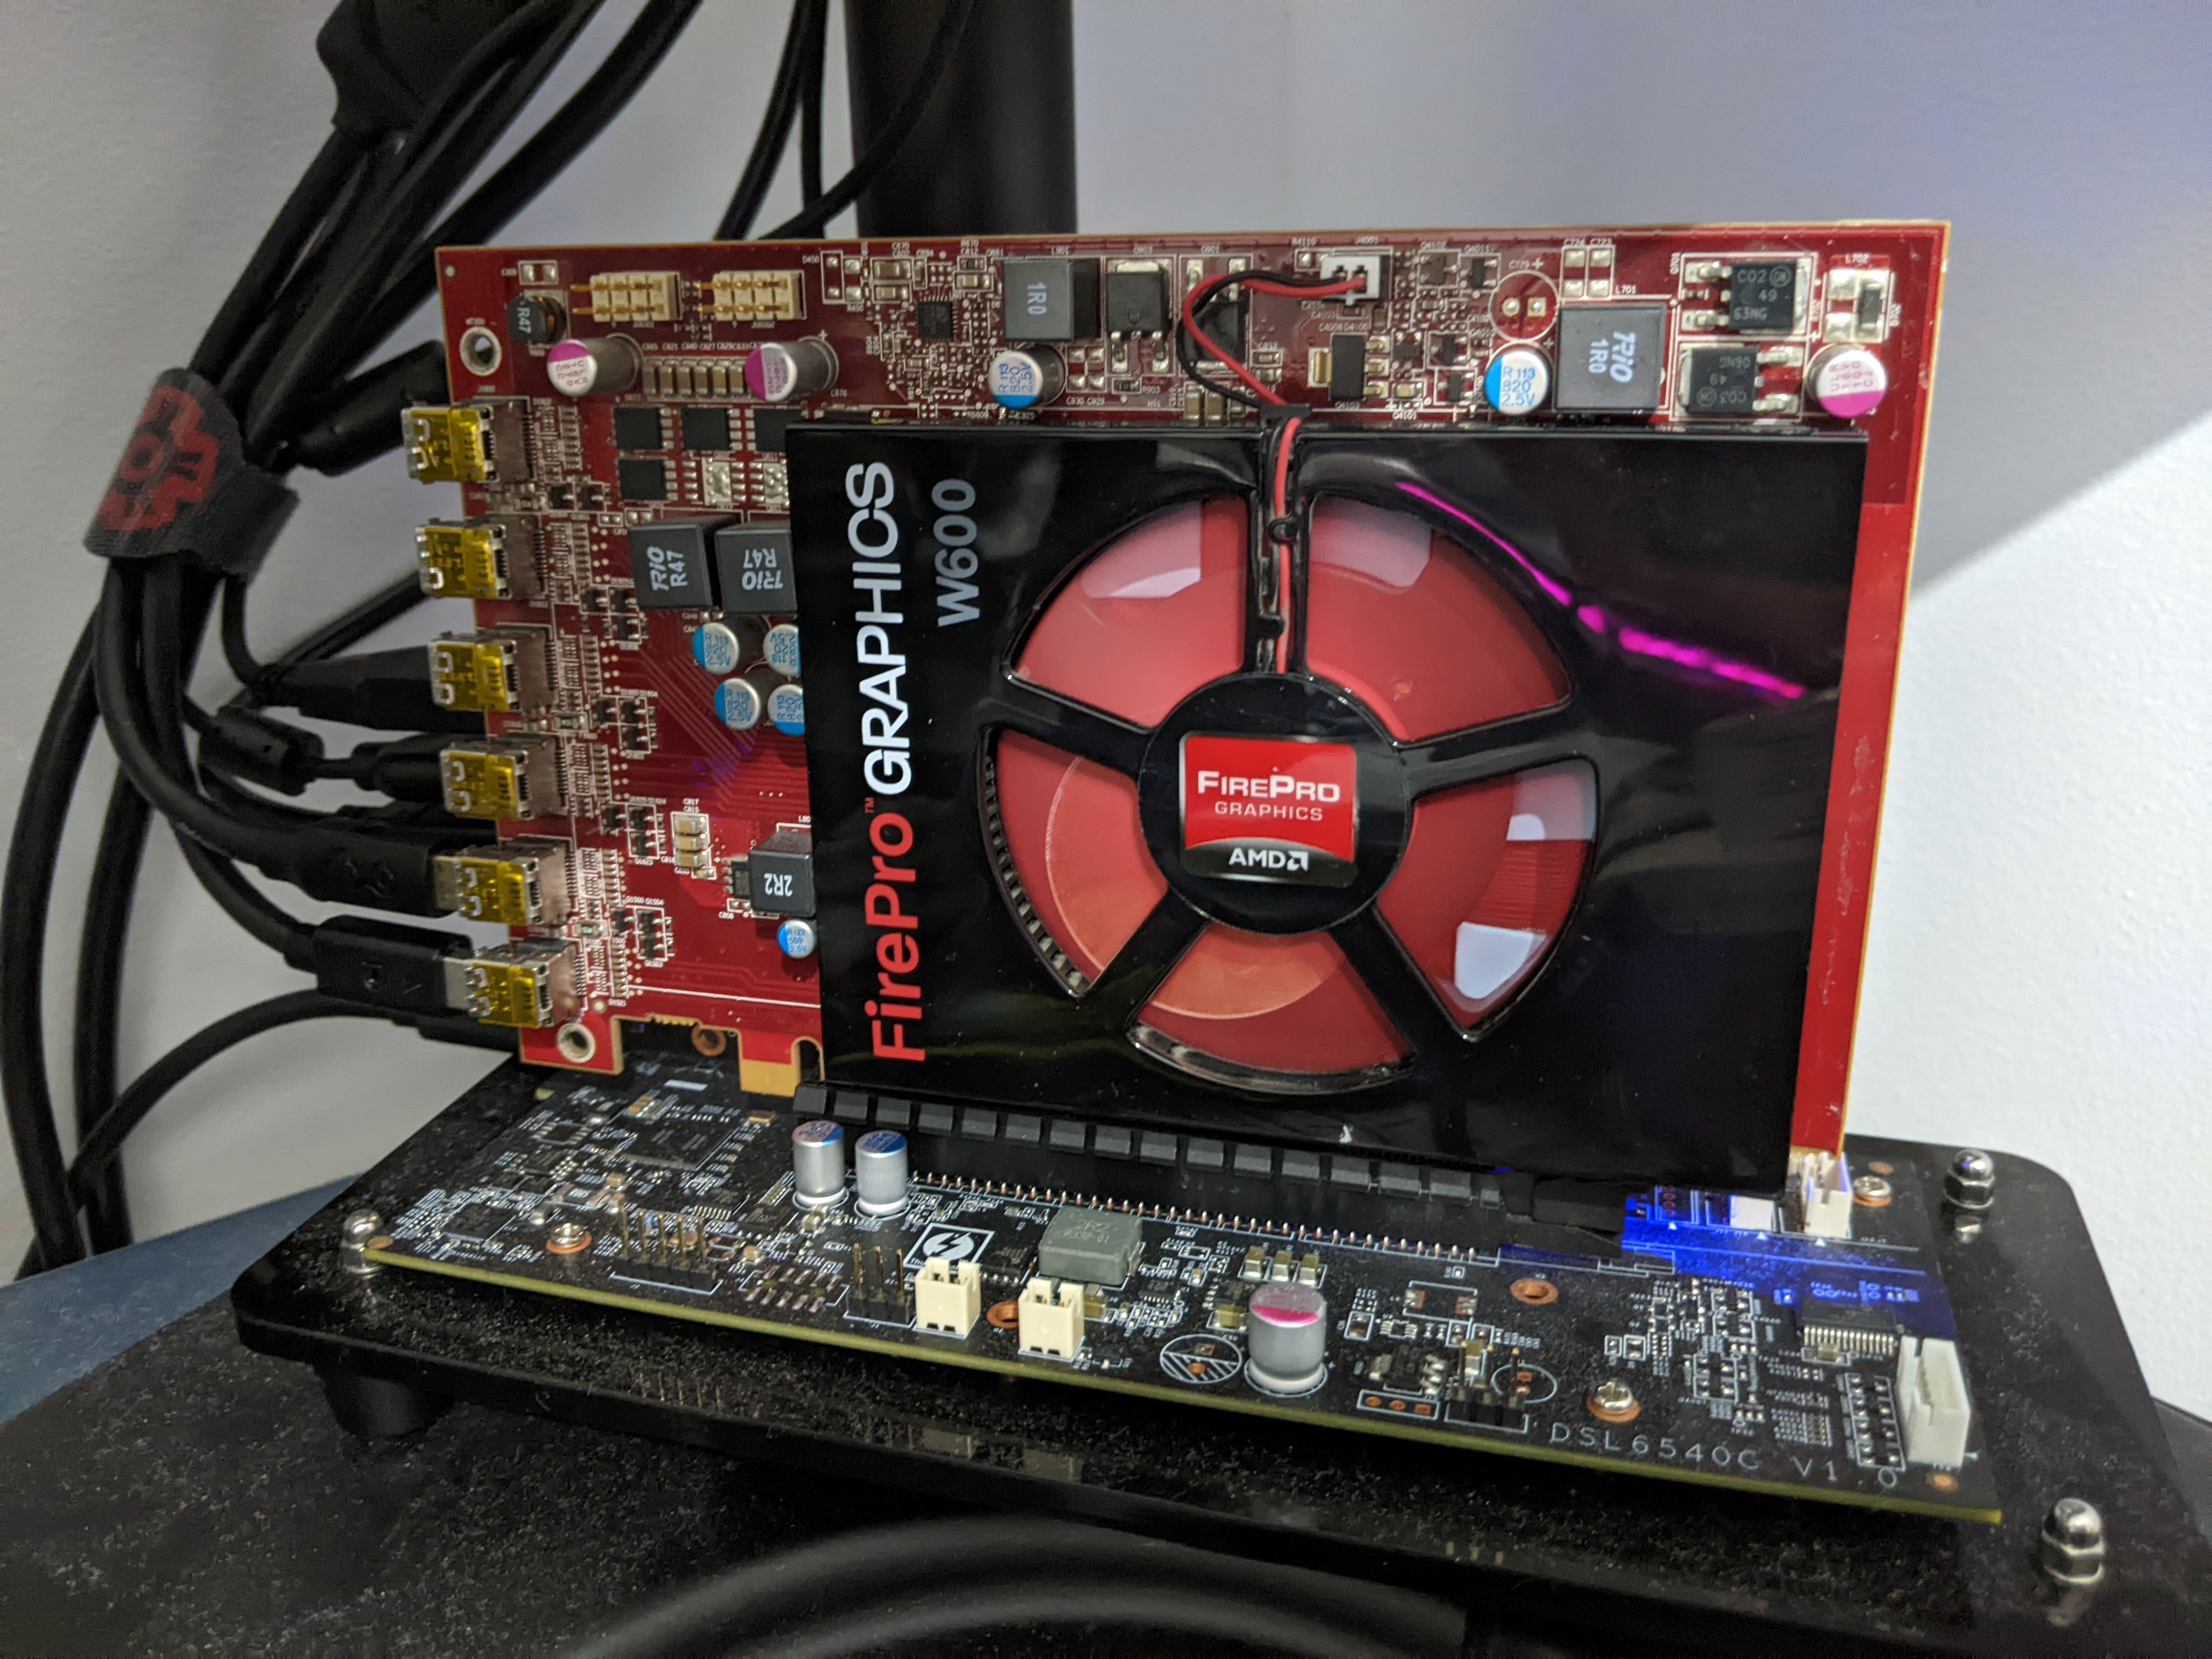 AMD FirePro W600 - Heatsink/Fan Replacement for Silence